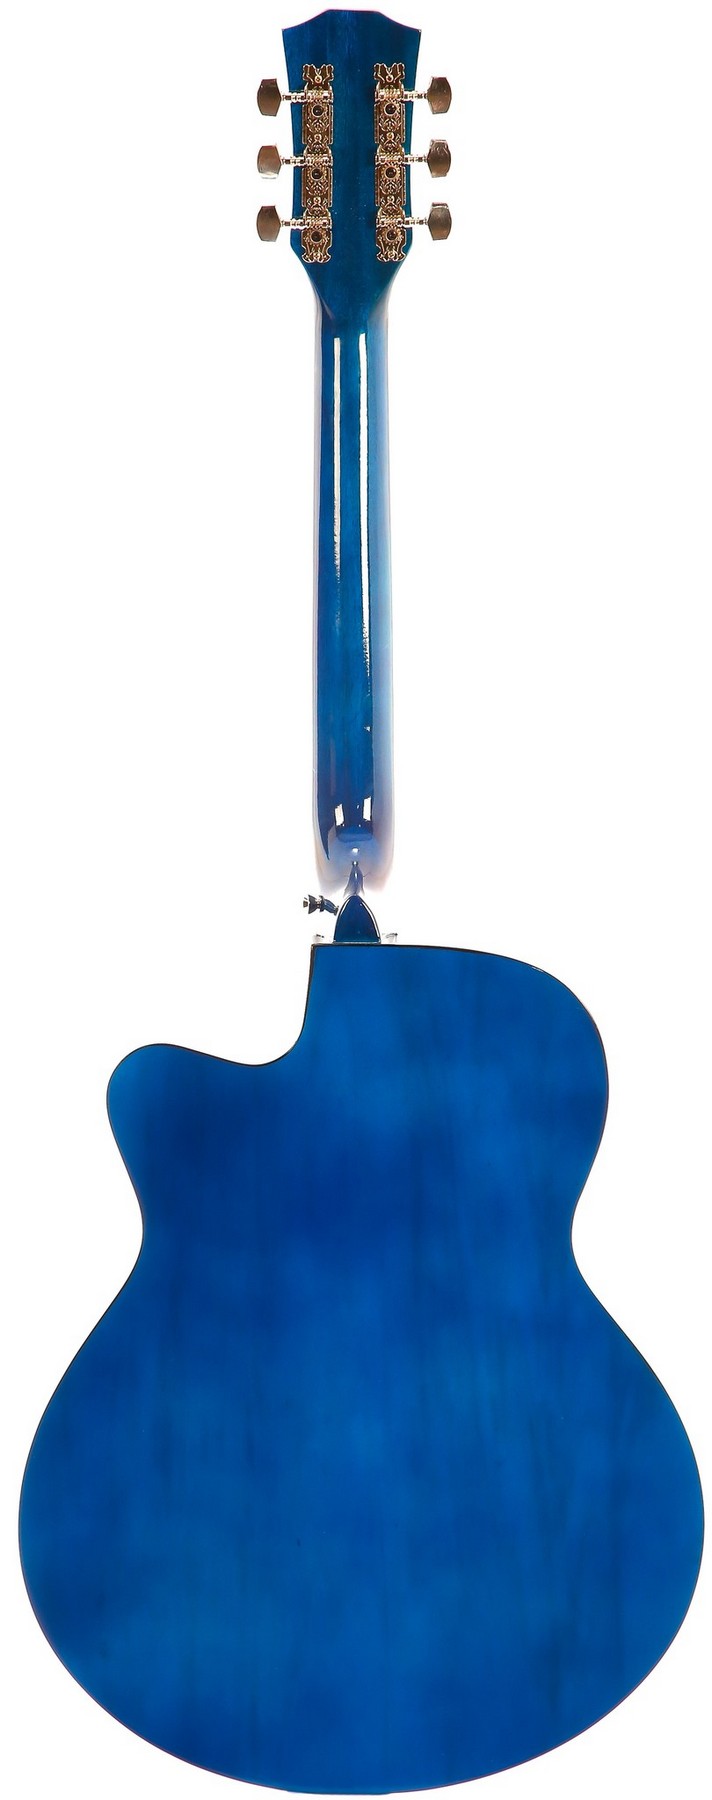 Акустическая гитара Belucci BC4040 1568 (Skelet)